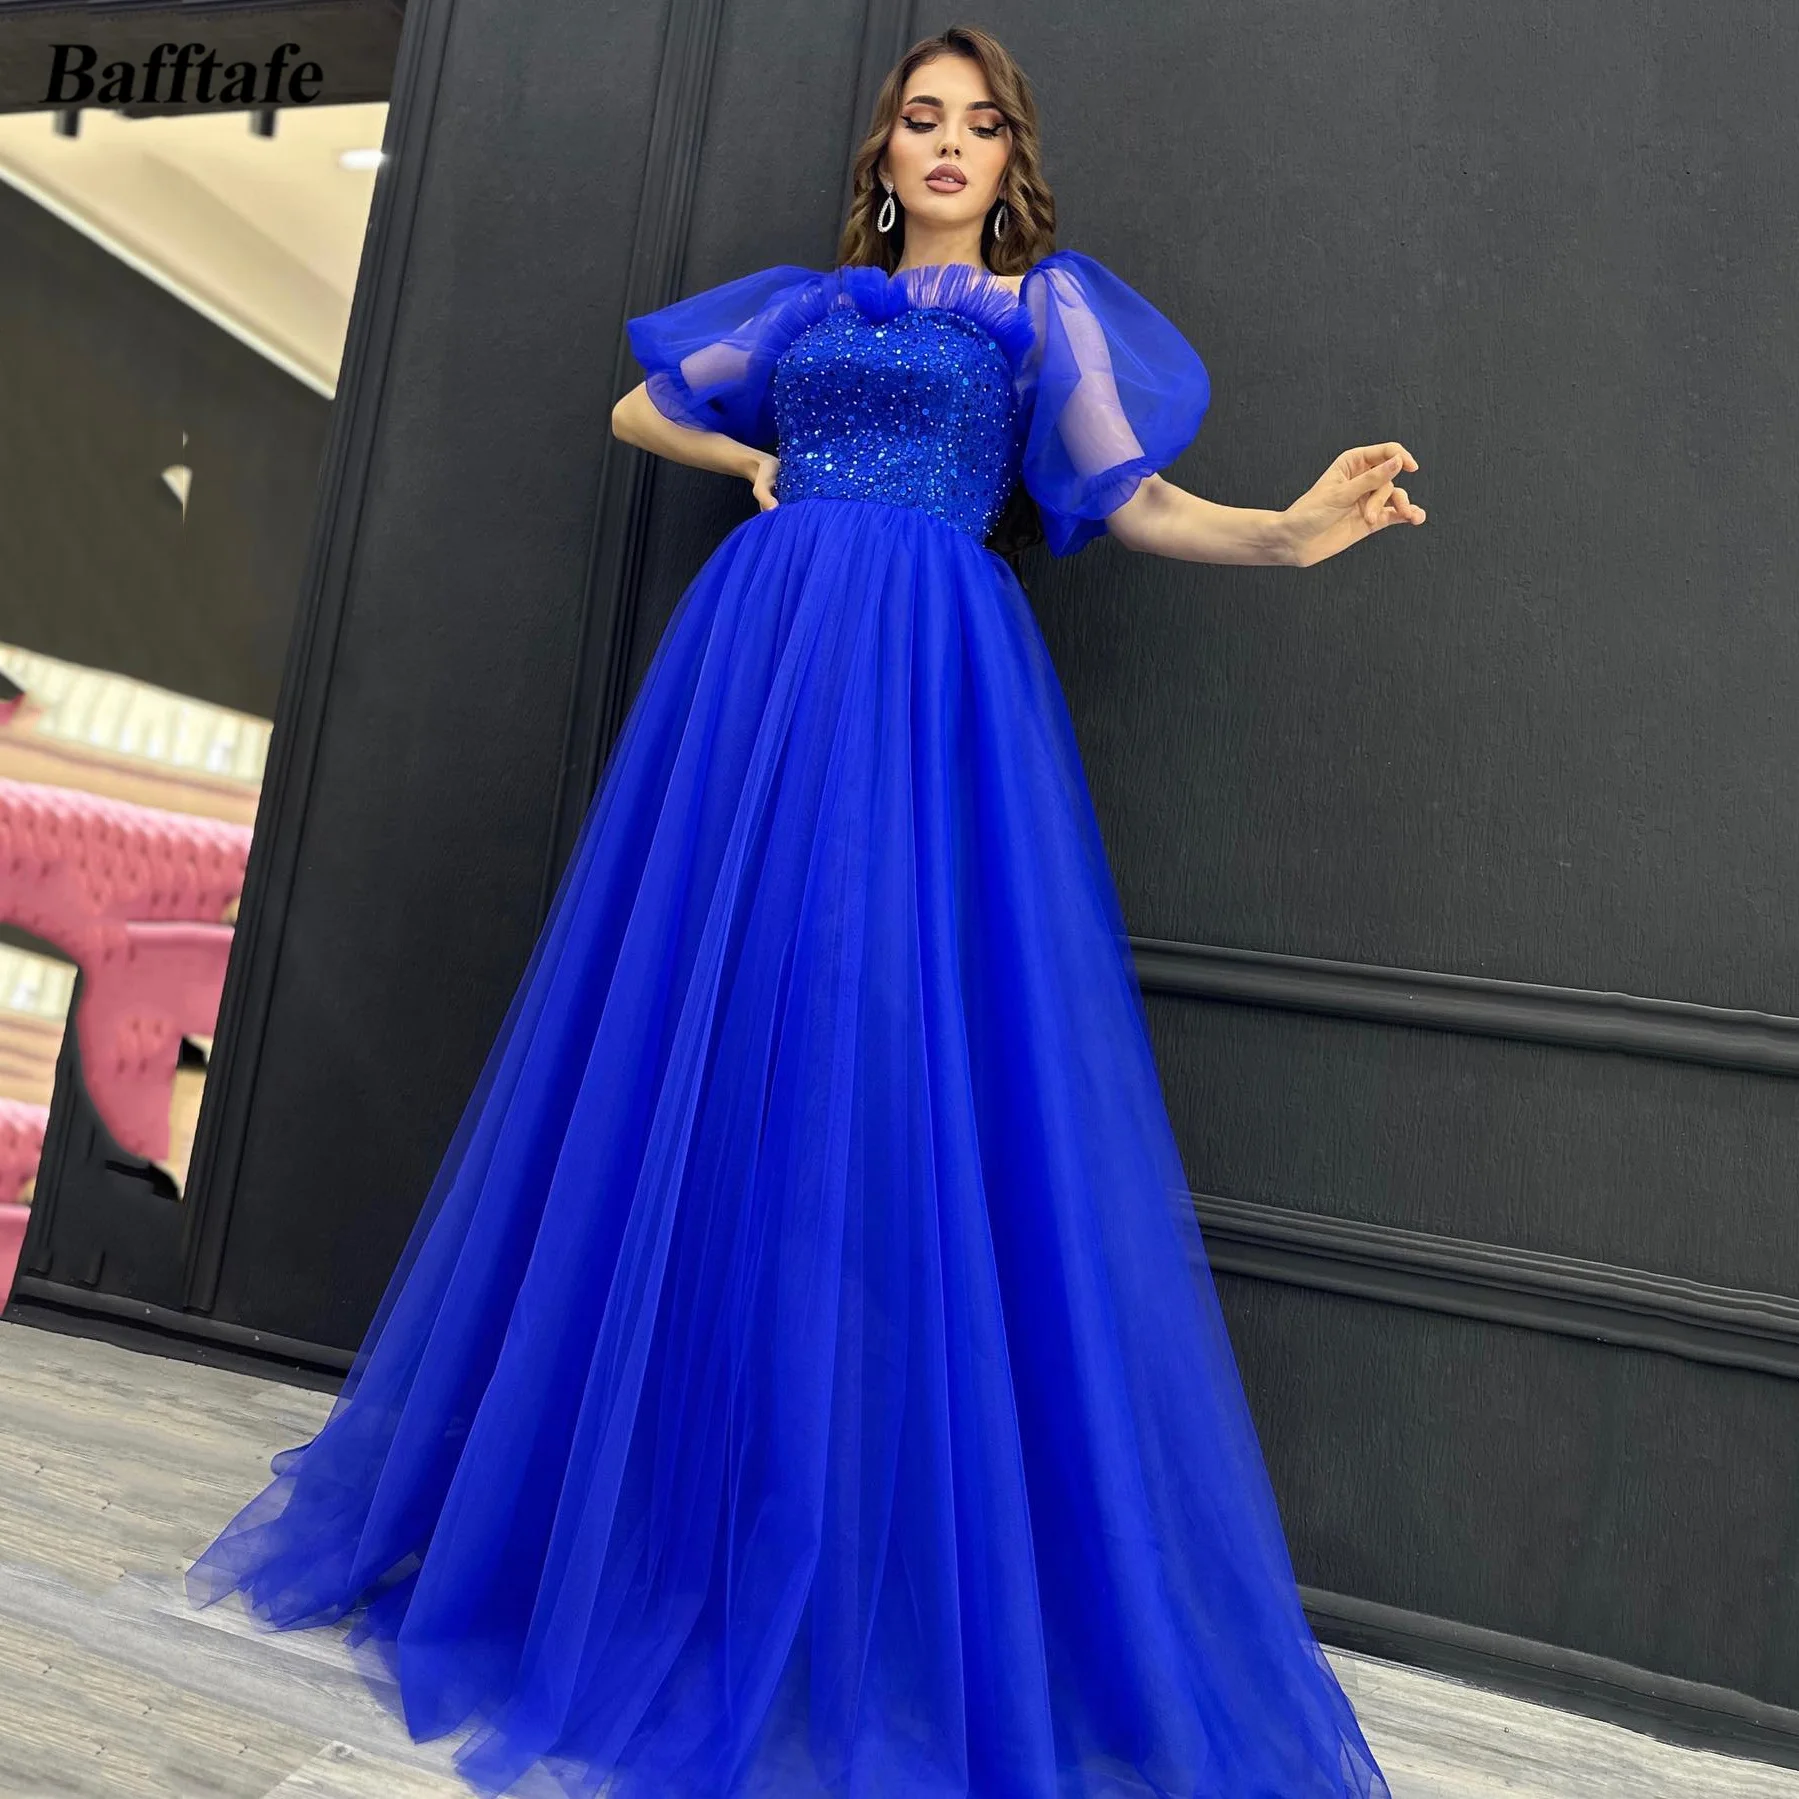 Bafftafe Royal Blue Трапециевидные тюлевые женские платья для выпускного вечера, специальные платья с короткими рукавами, расшитое бисером Арабское длинное вечернее платье для вечеринки Изображение 0